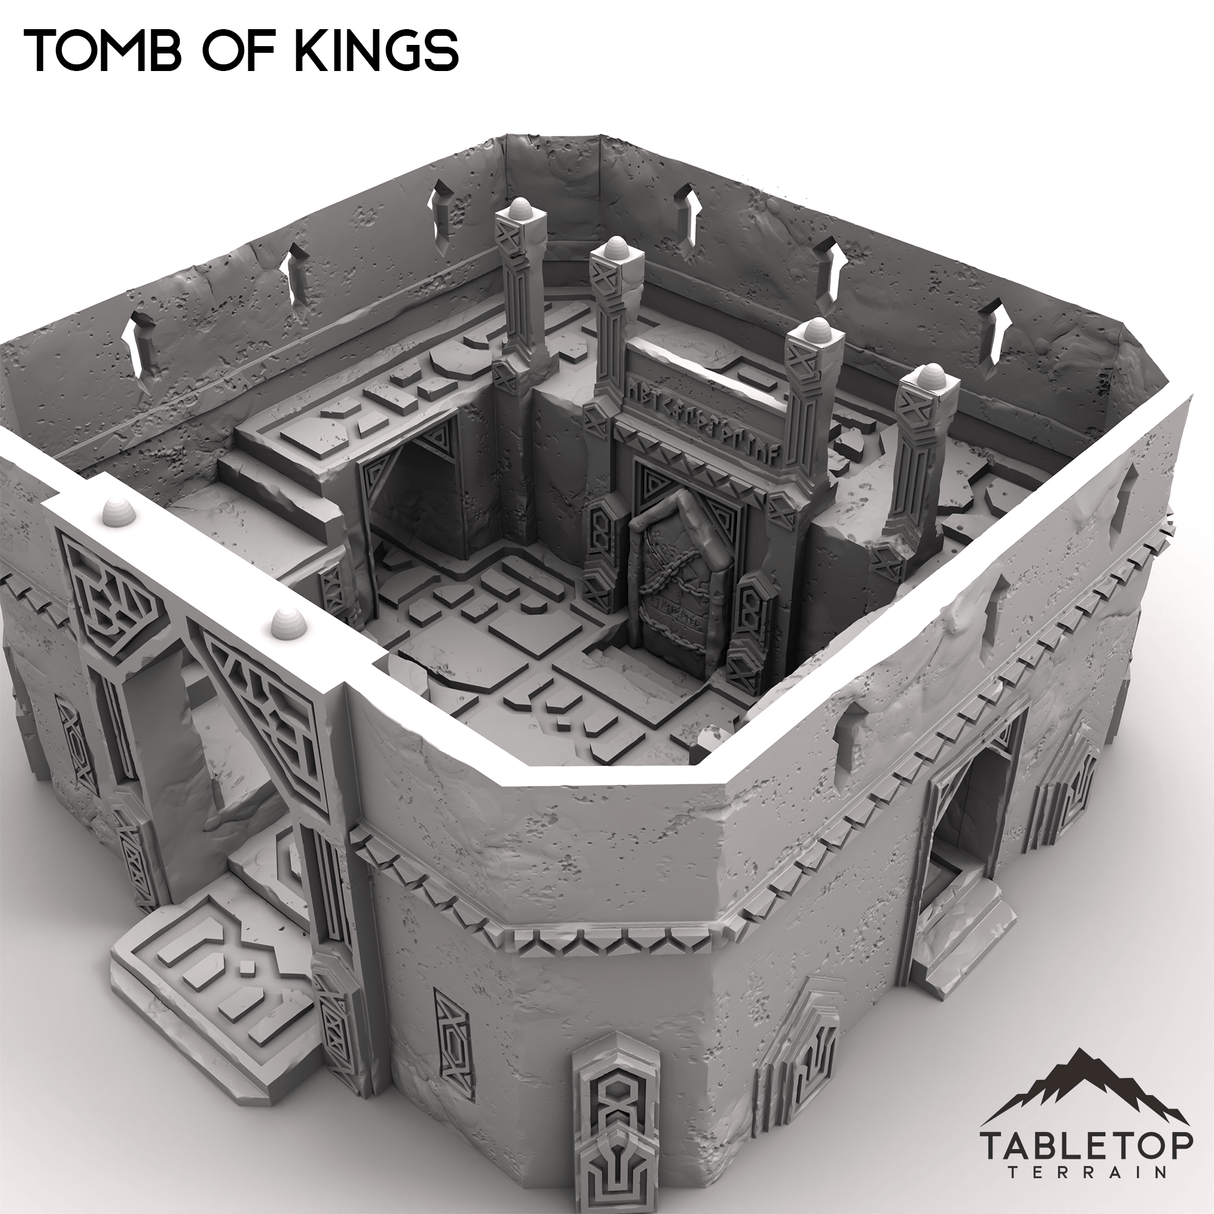 Tabletop Terrain Building Tomb of Kings - Kingdom of Durak Deep